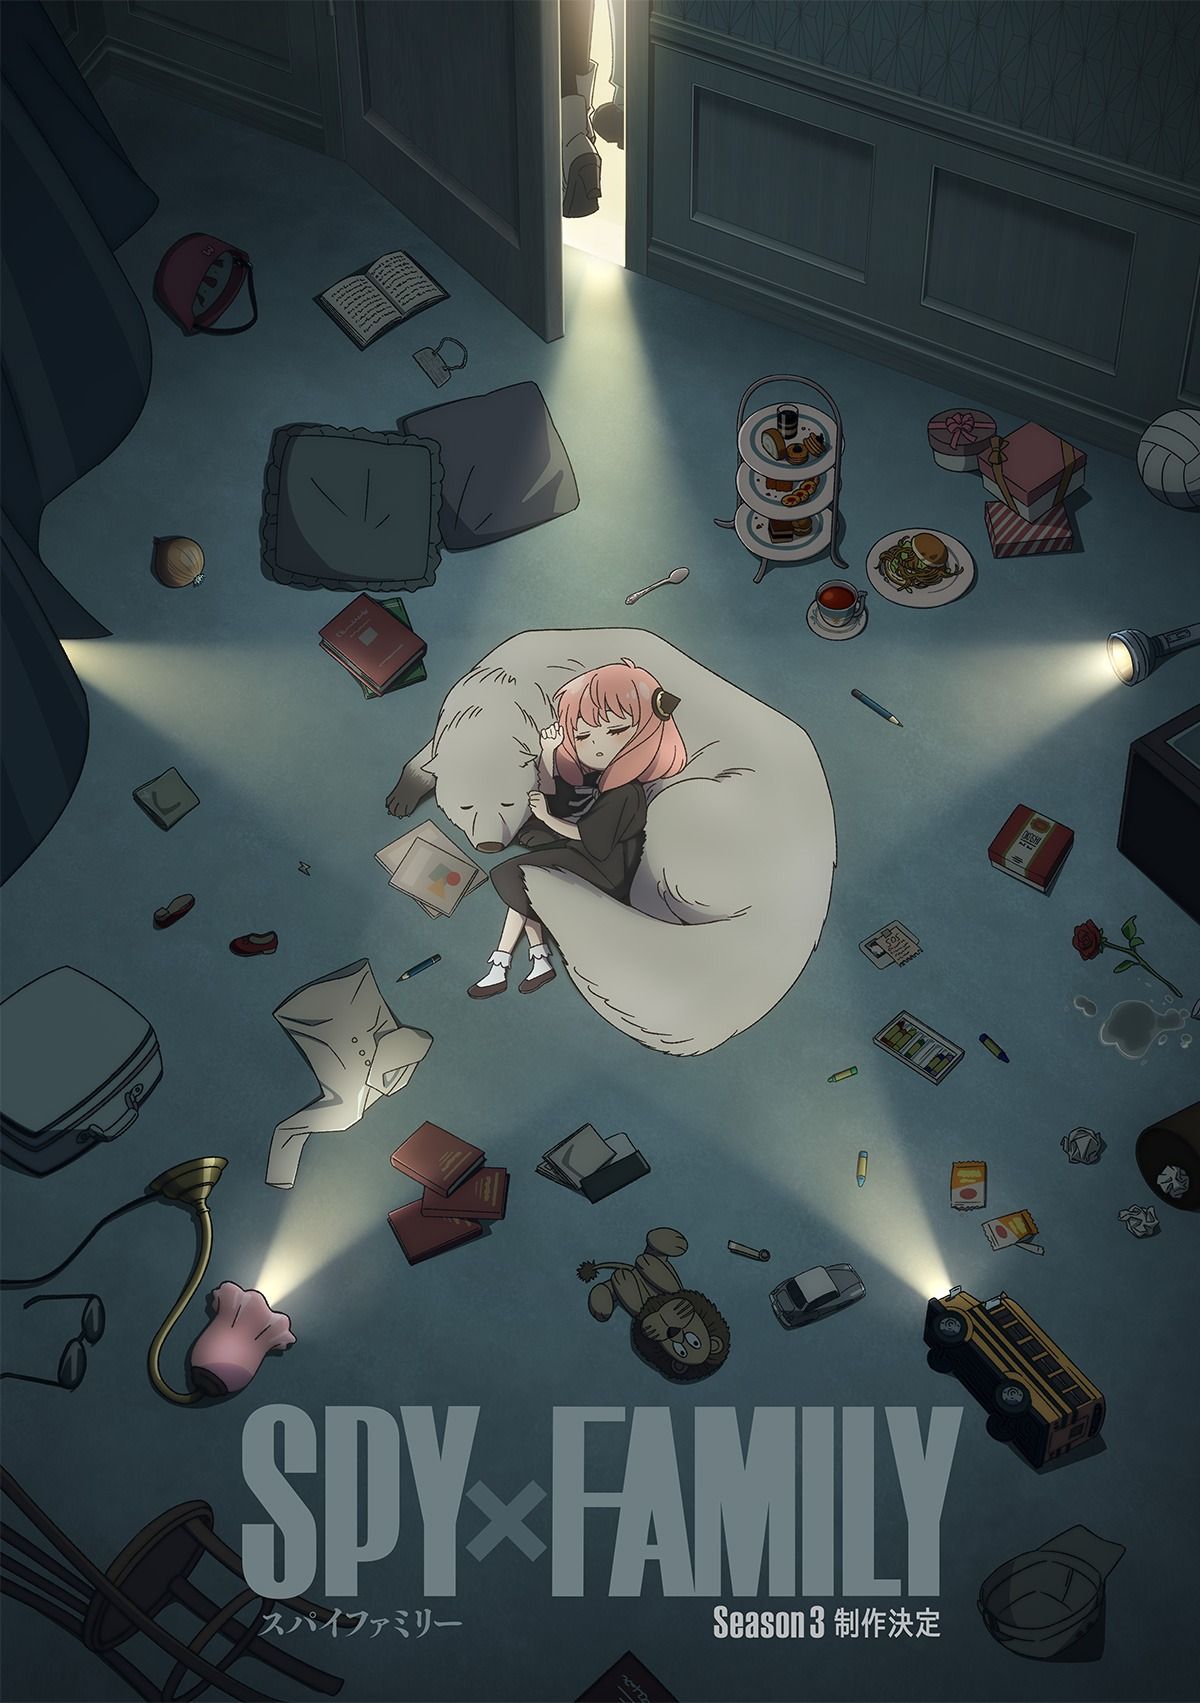 Spy x Family анонсирует третий сезон с первым визуальным тизером